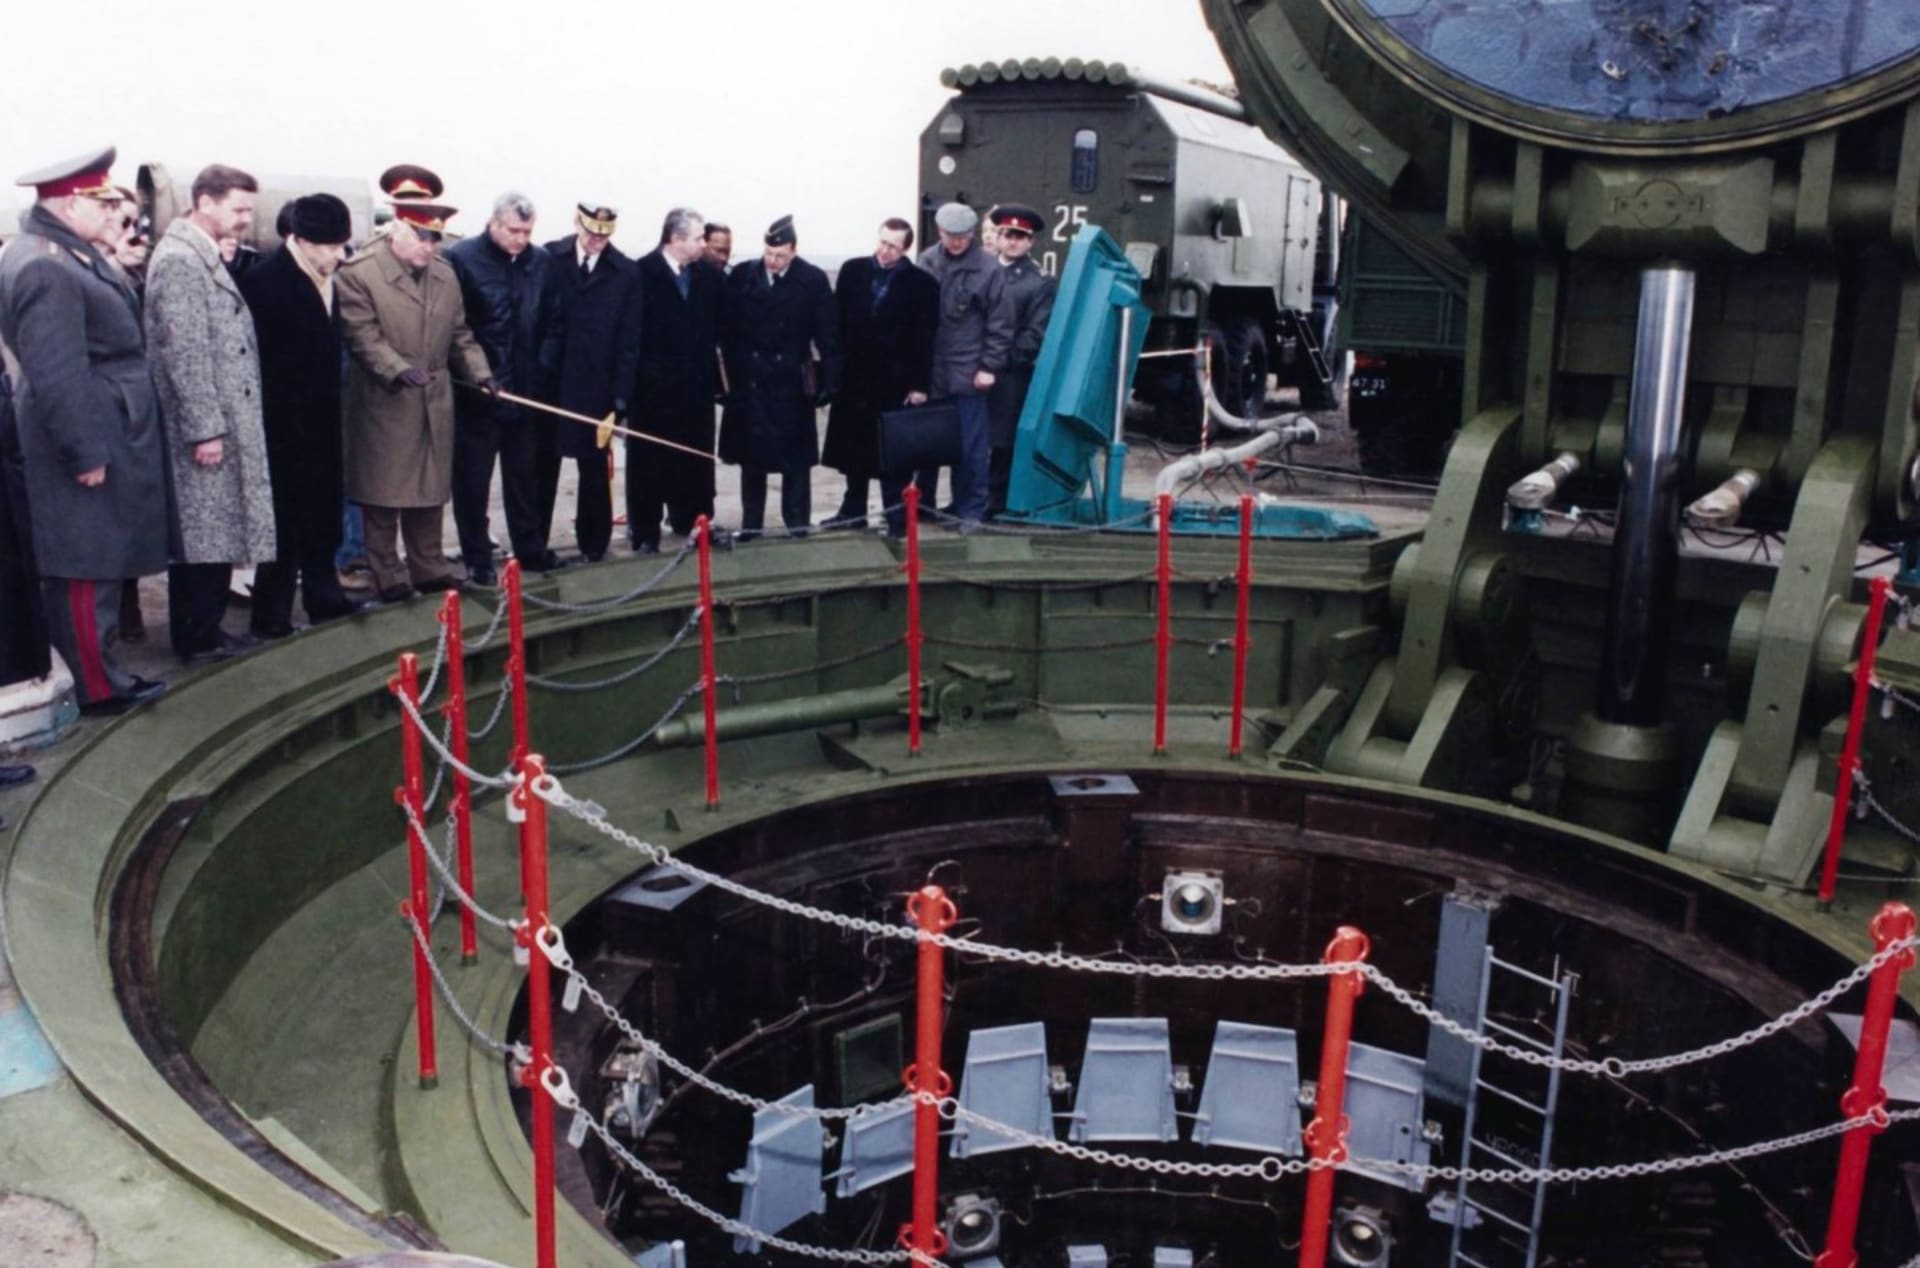 Základna jaderných zbraní v Pervomajsku na Ukrajině, dnes muzeum. Po roce 1991 byly rakety předány Rusku, které za tento krok slibovalo záruku územní celistvosti včetně Krymu. Na snímku proces předávání raket.